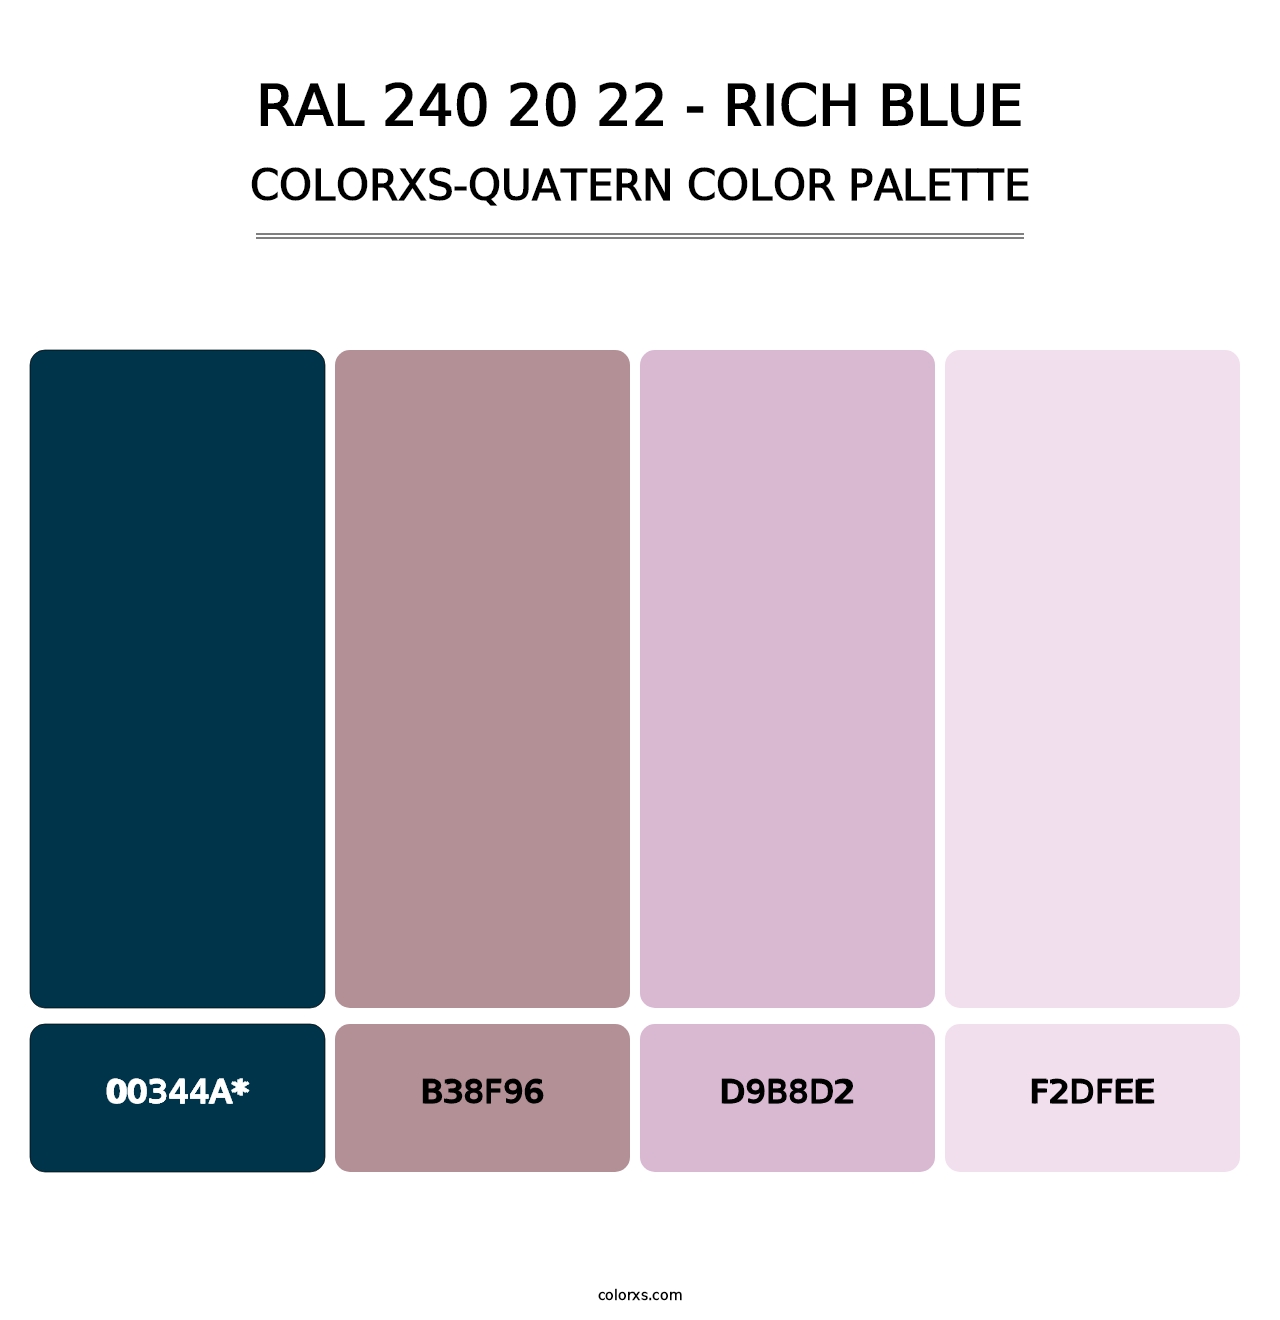 RAL 240 20 22 - Rich Blue - Colorxs Quatern Palette